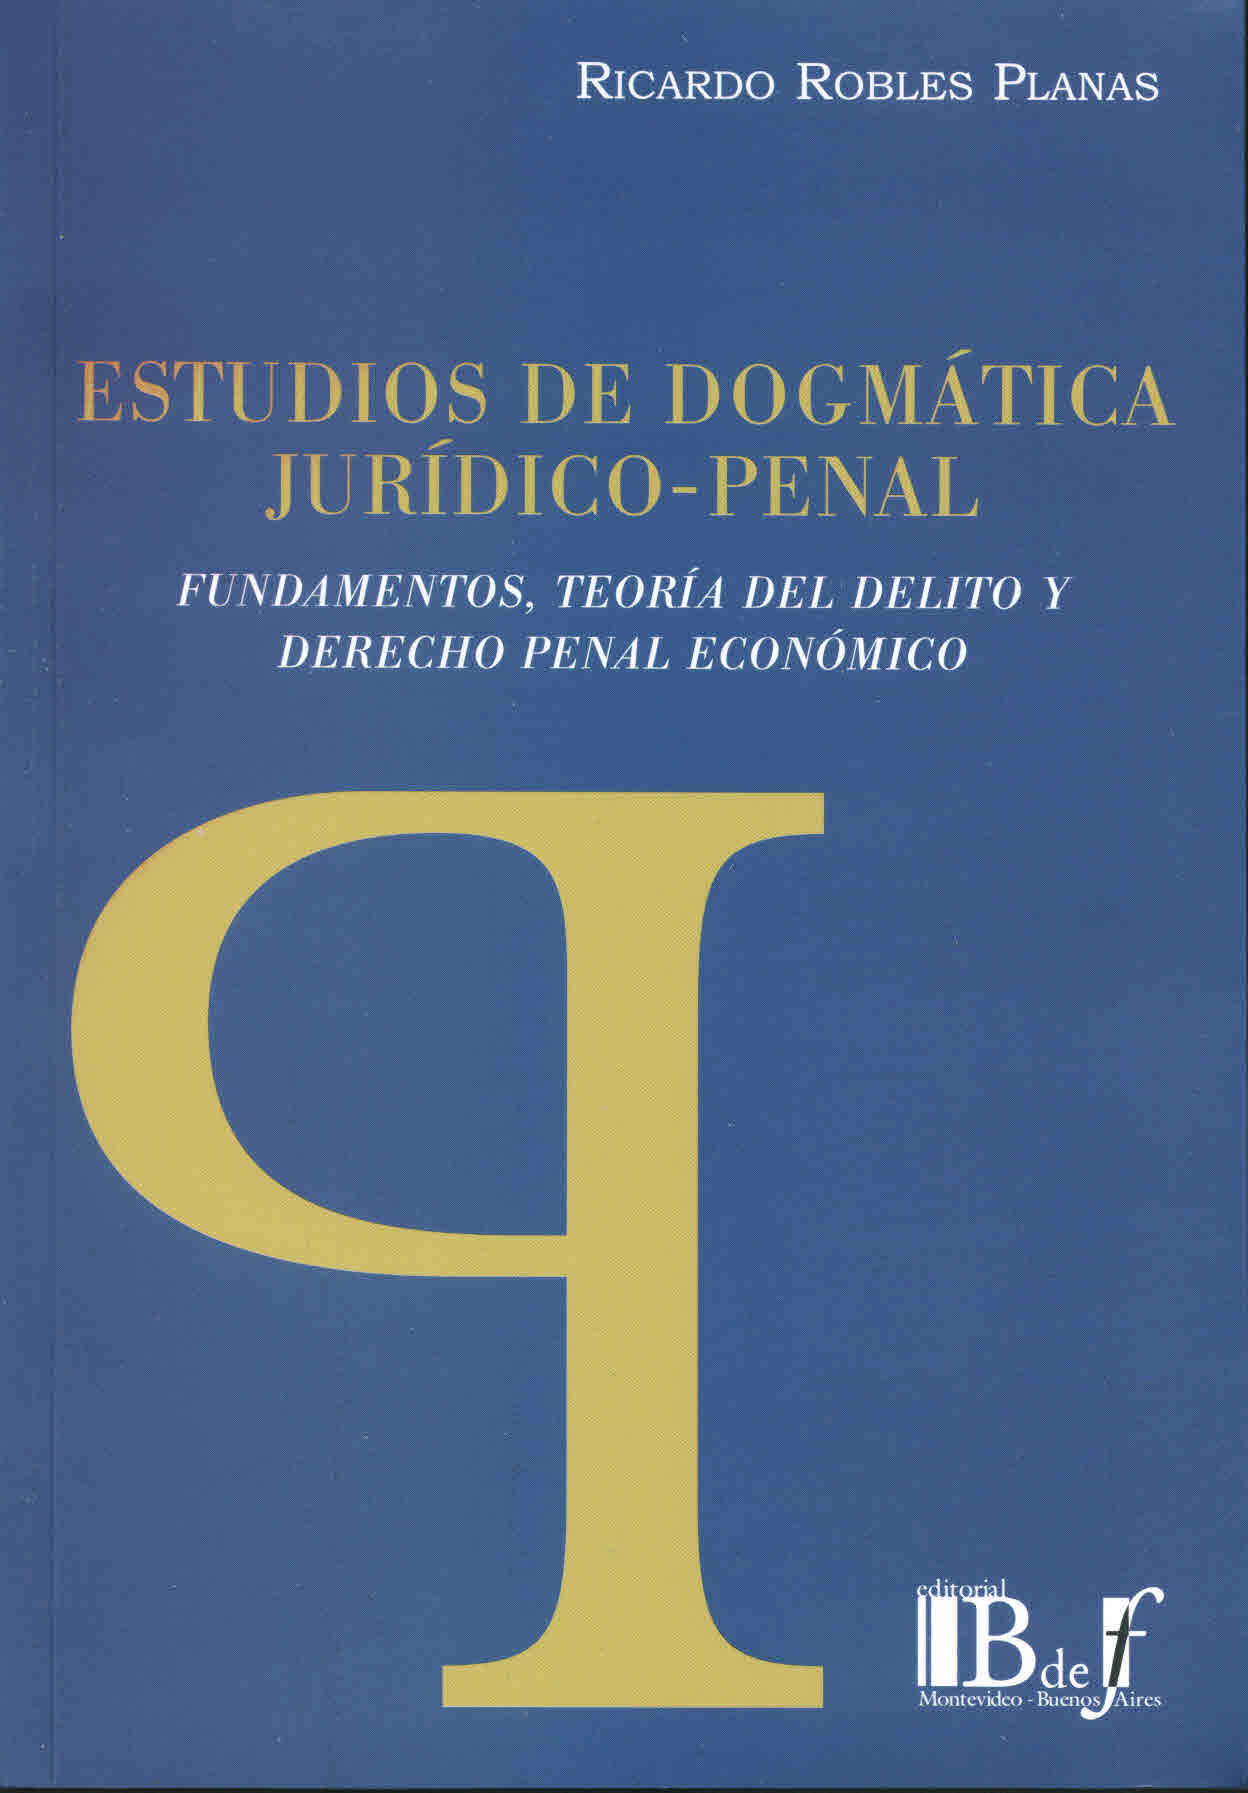 Estudios de dogmática jurídico-penal. Fundamentos, teoría del delito y derecho penal económico